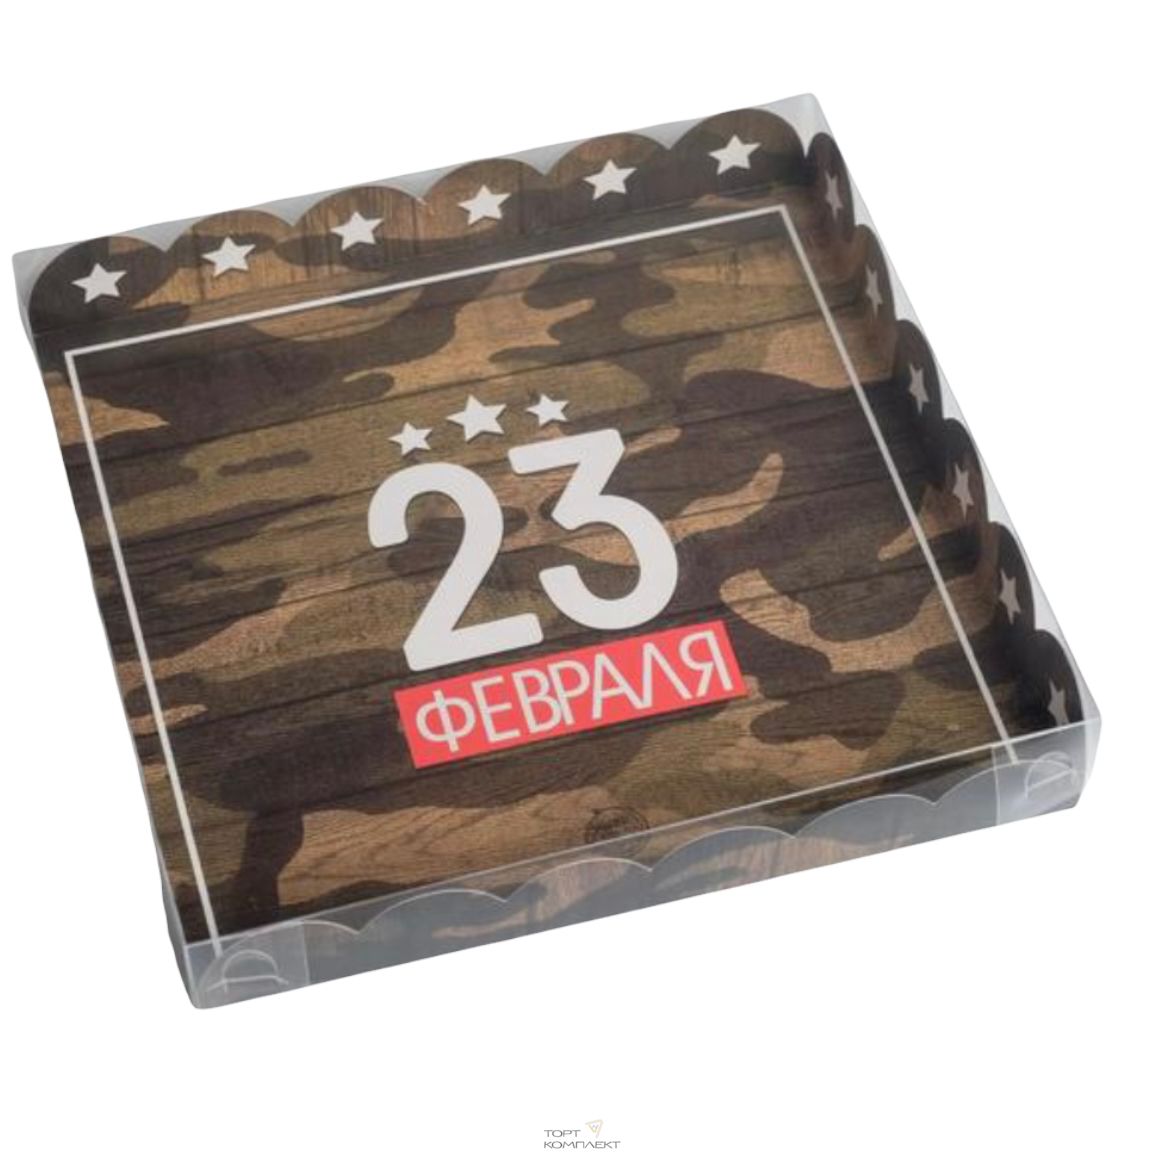 Купить Коробка для кондитерских изделий крышкой 23 Февраля военная, 21 × 21 × 3 см   